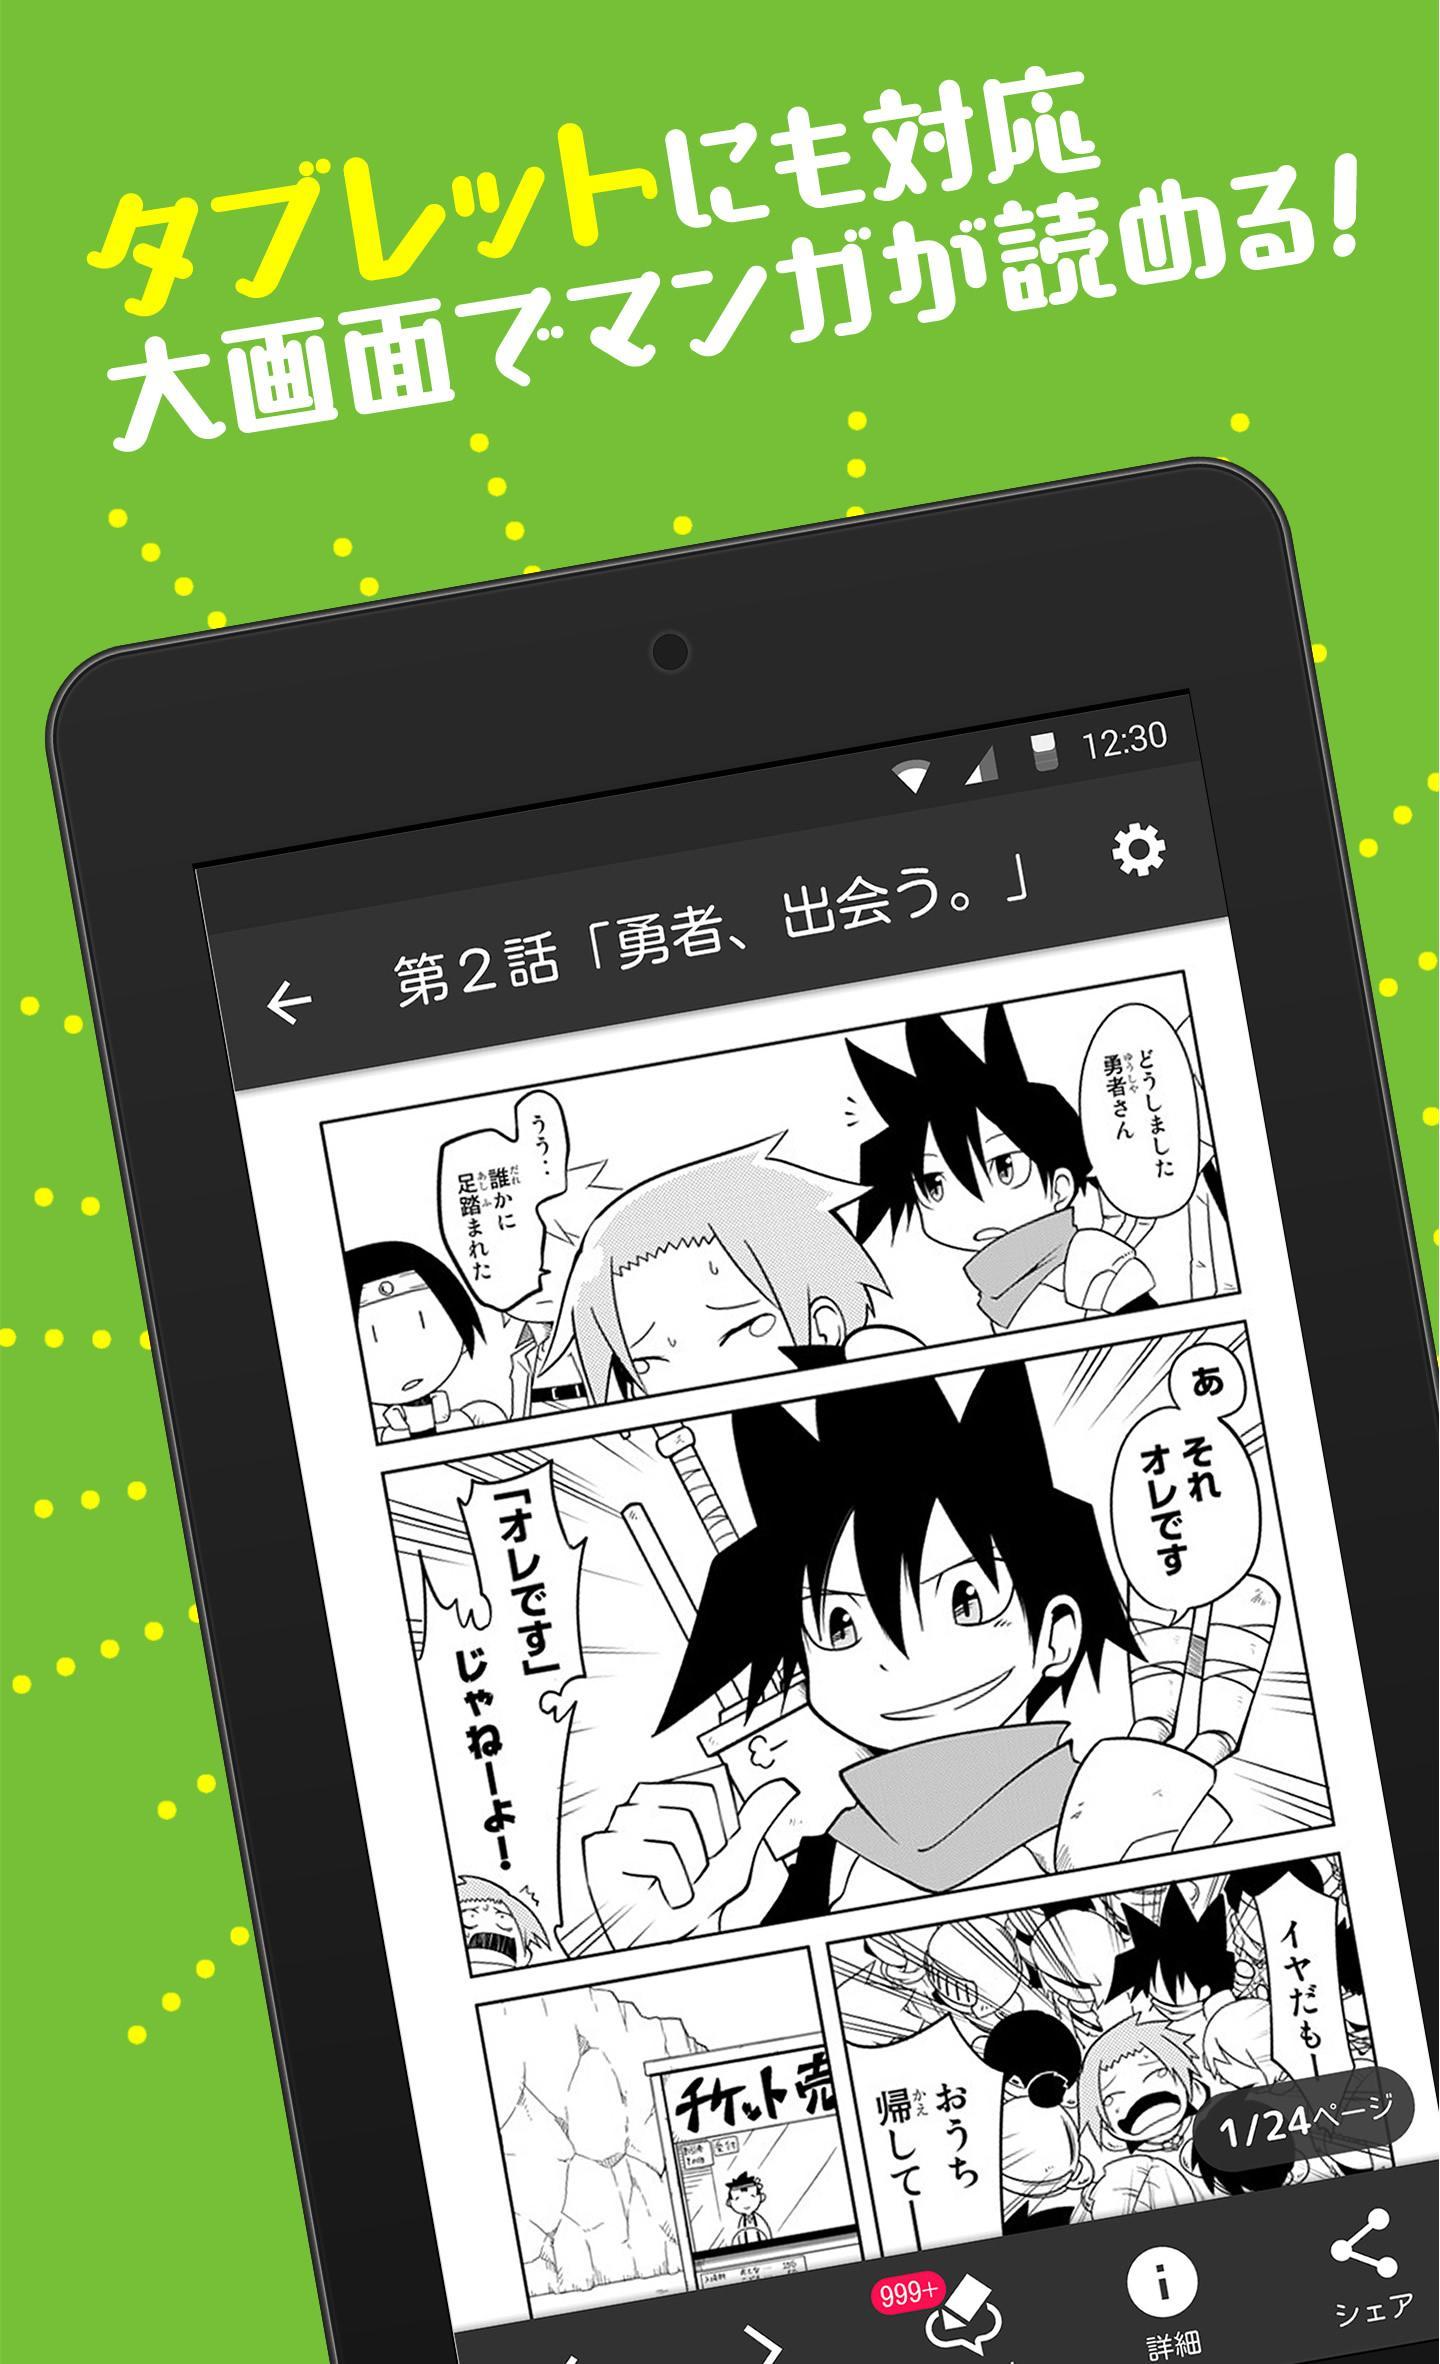 ニコニコ漫画 無料で雑誌・WEBの人気マンガや未来のヒット作が読める 1.7.14 Screenshot 8